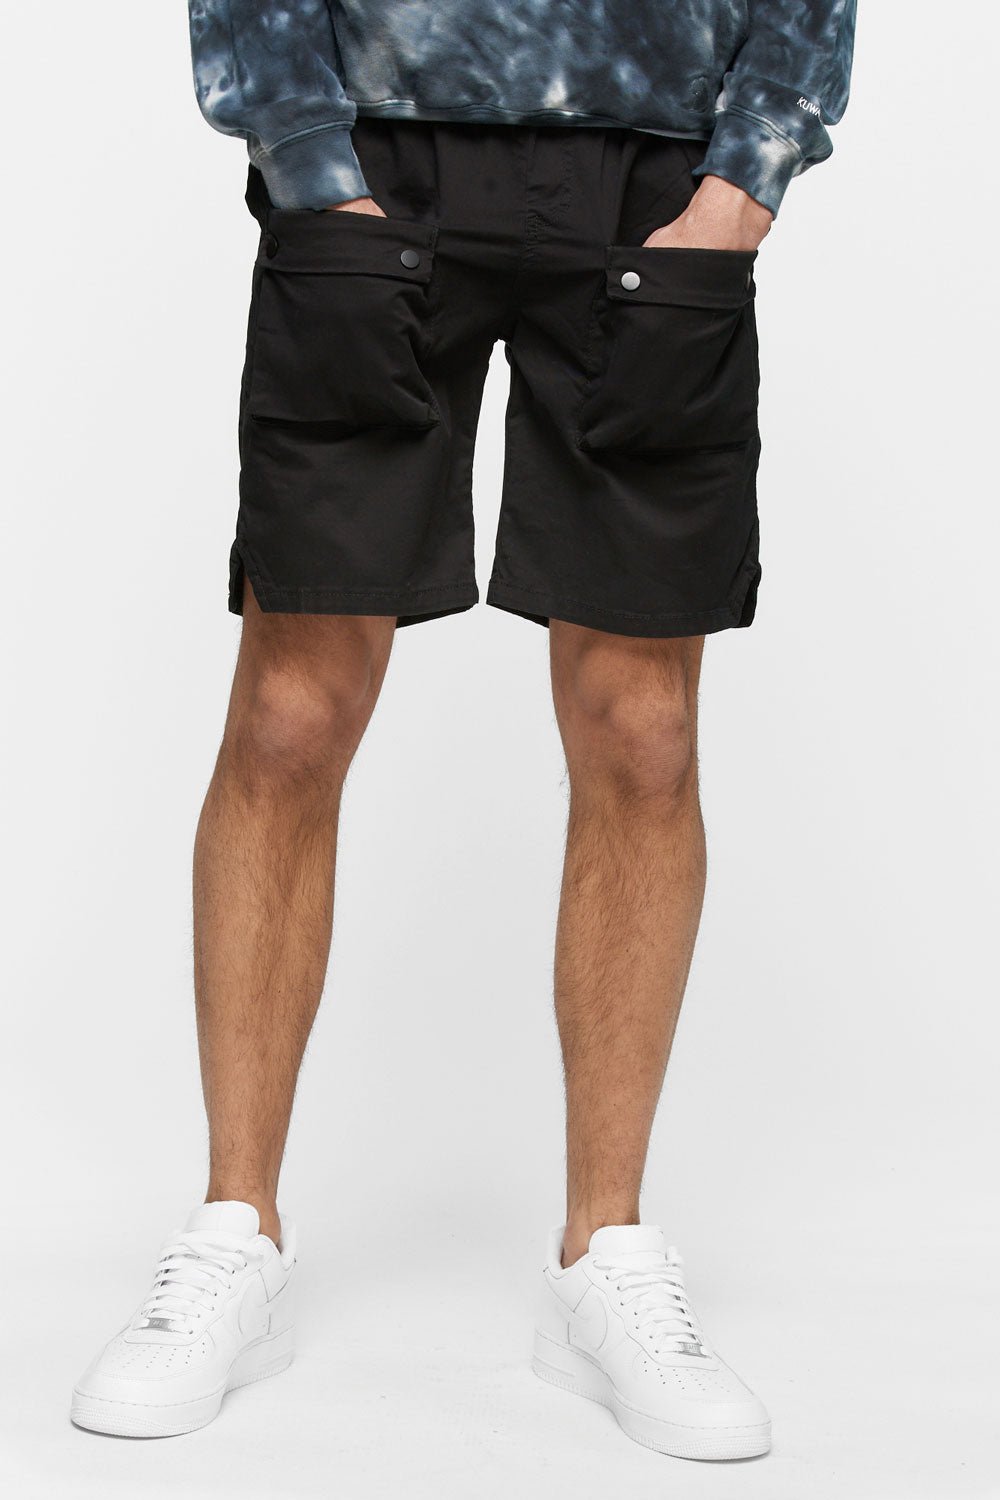 Men’s Streetwear Shorts - Kuwalla Tee